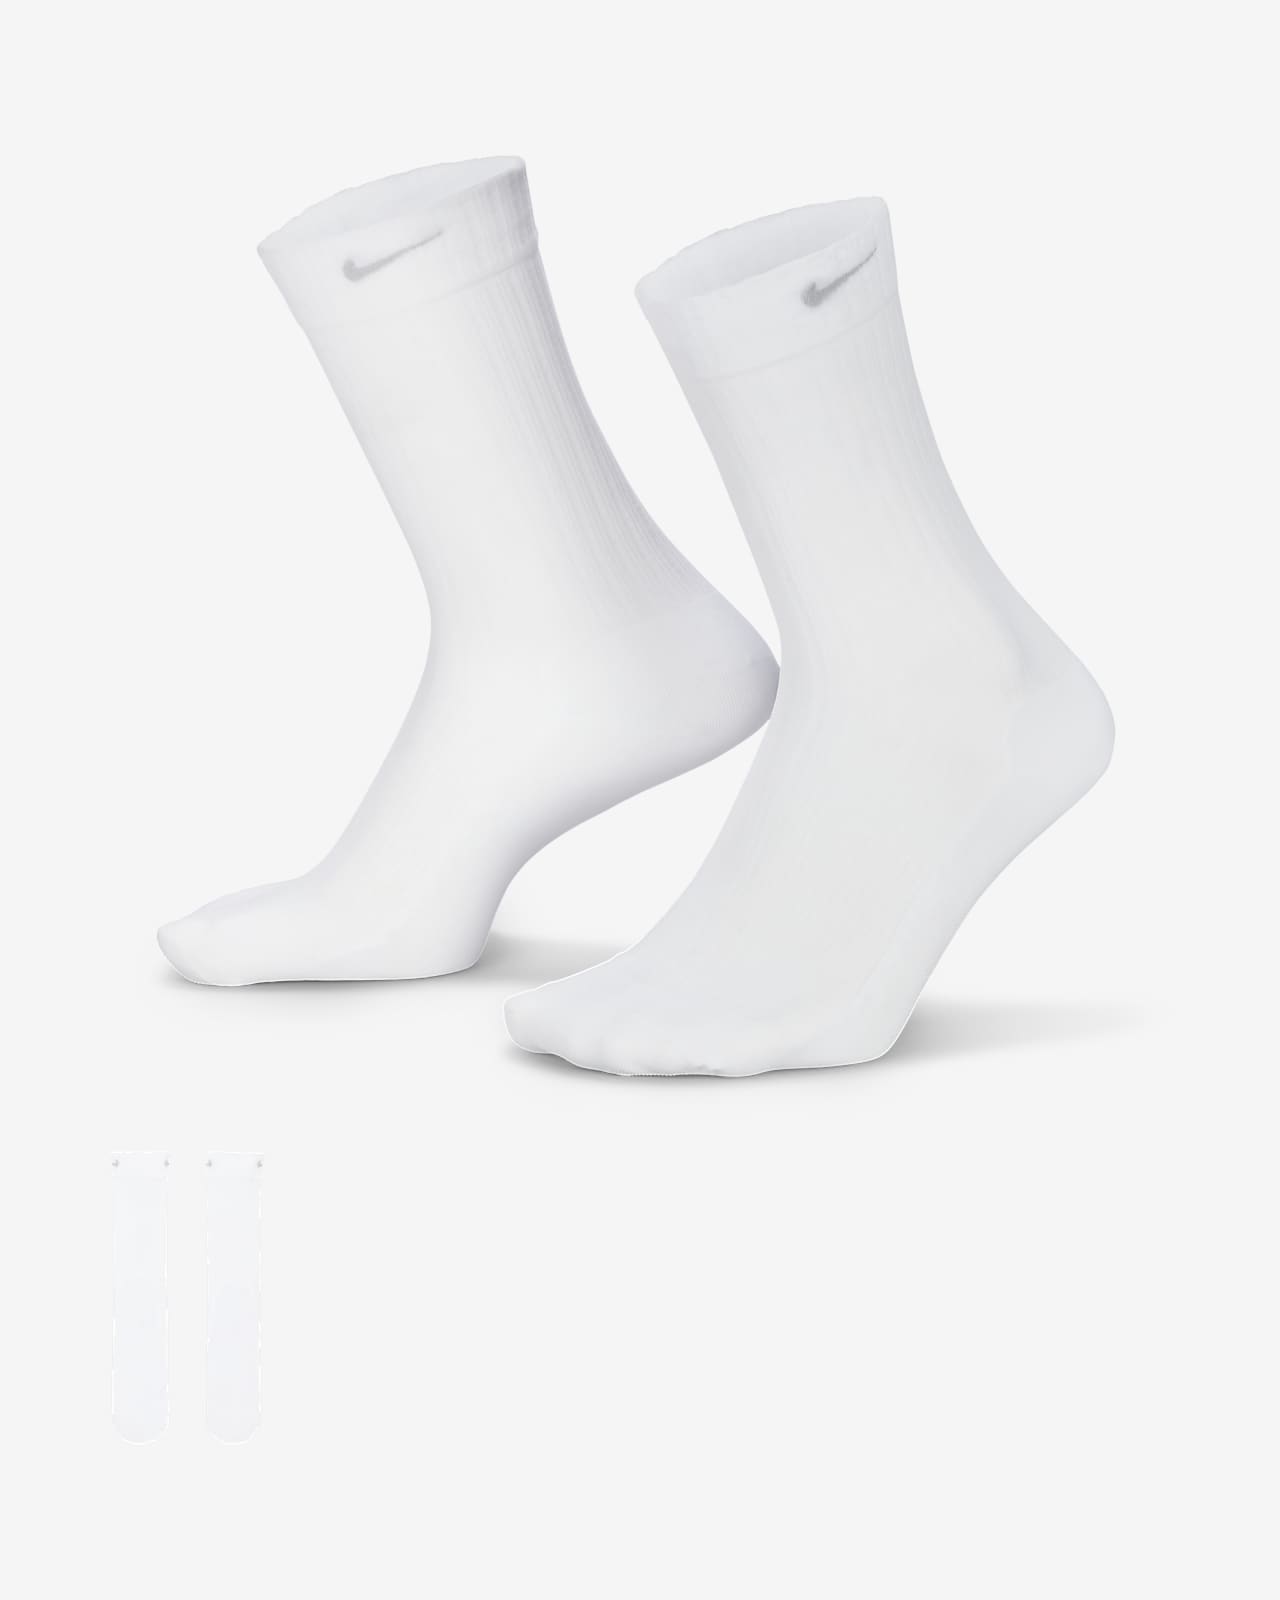 Chaussettes mi-mollet transparentes Nike pour femme (1 paire)